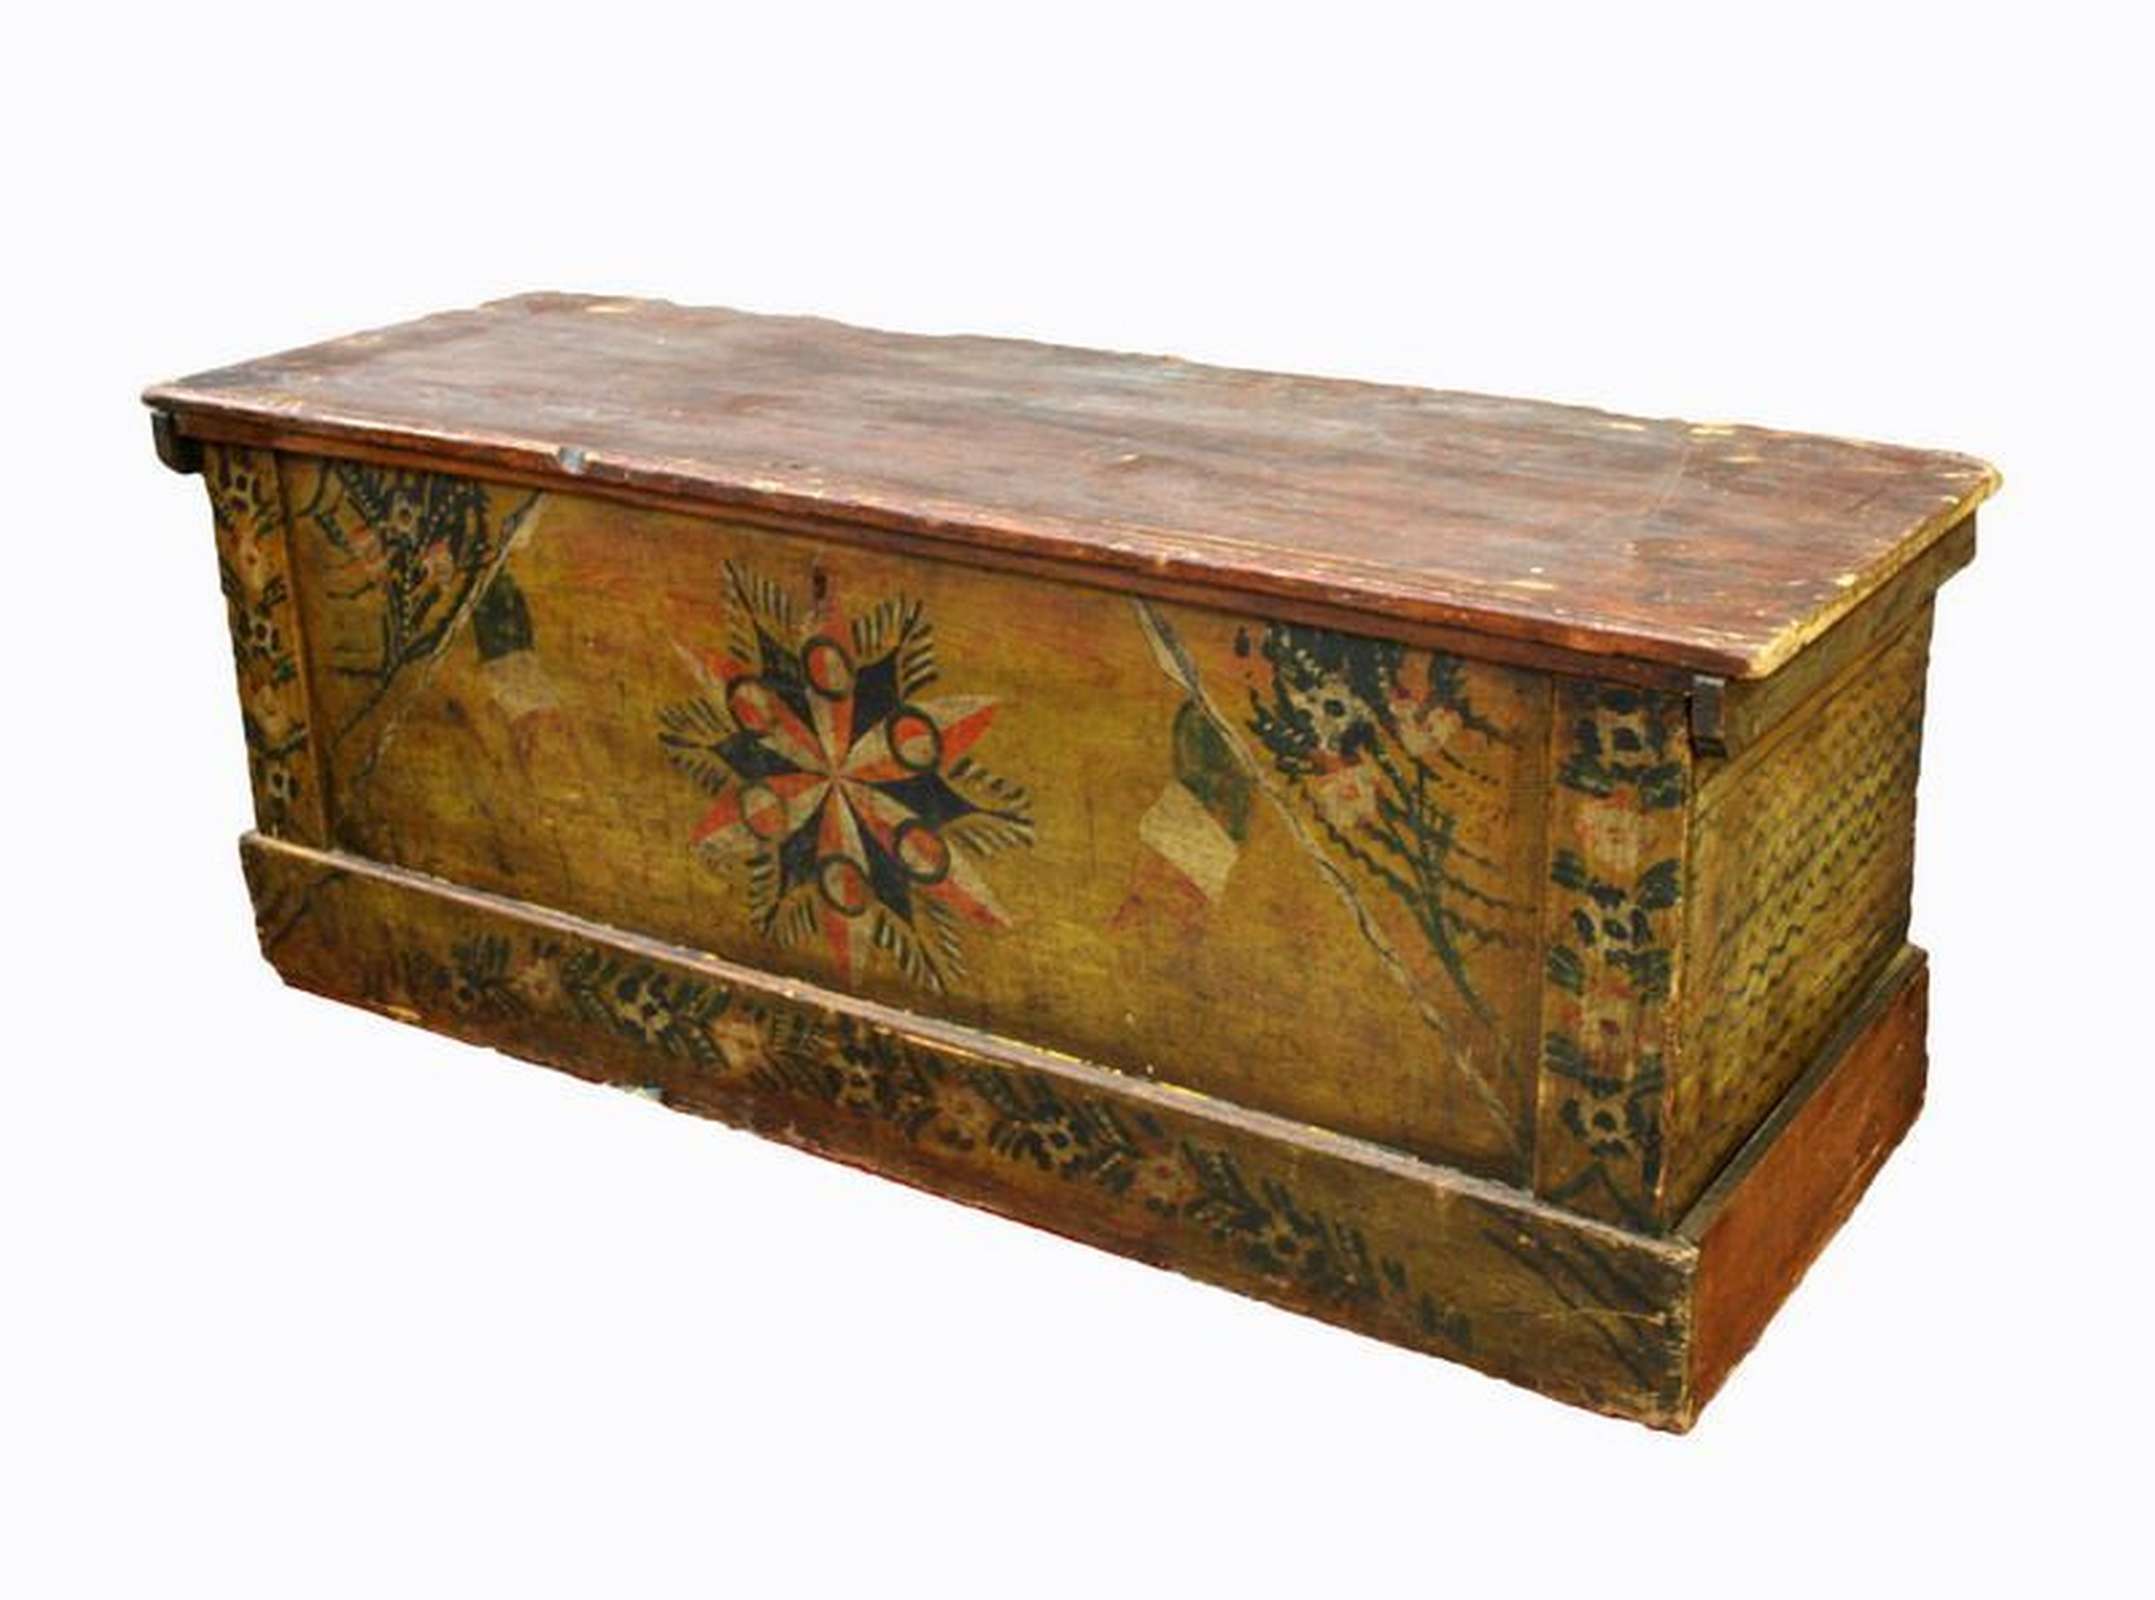 Antica cassapanca in legno. Epoca 1800. - Cassapanche Antiche - Mobili antichi - Prodotti - Antichità Fiorillo